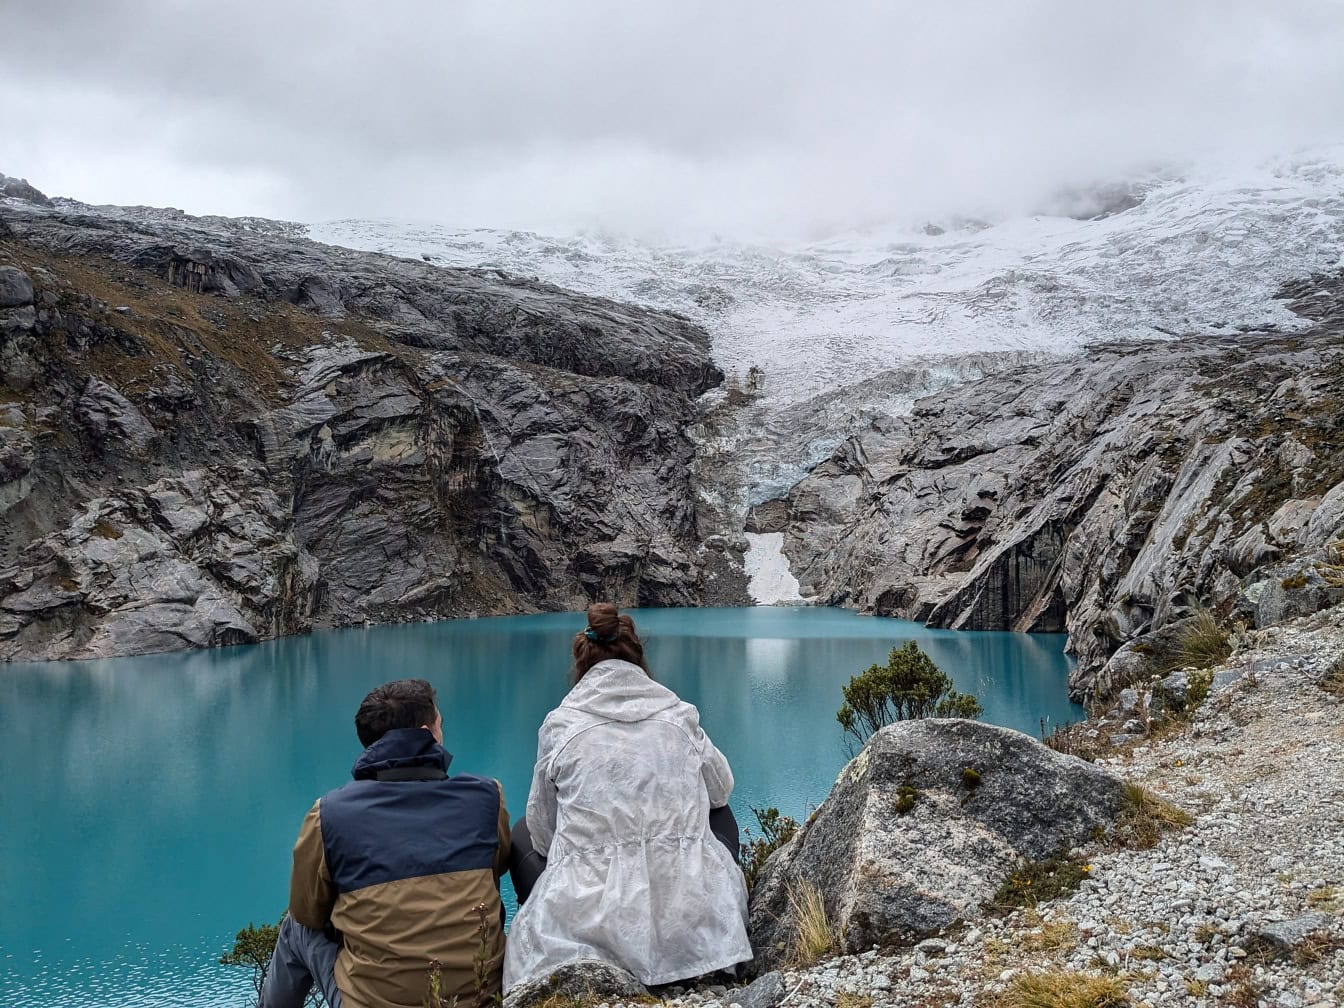 Người đàn ông và người phụ nữ ngồi trên bờ hồ 513, một hồ băng dưới chân núi Nevado Hualcan trong công viên quốc gia Huscaran, Peru